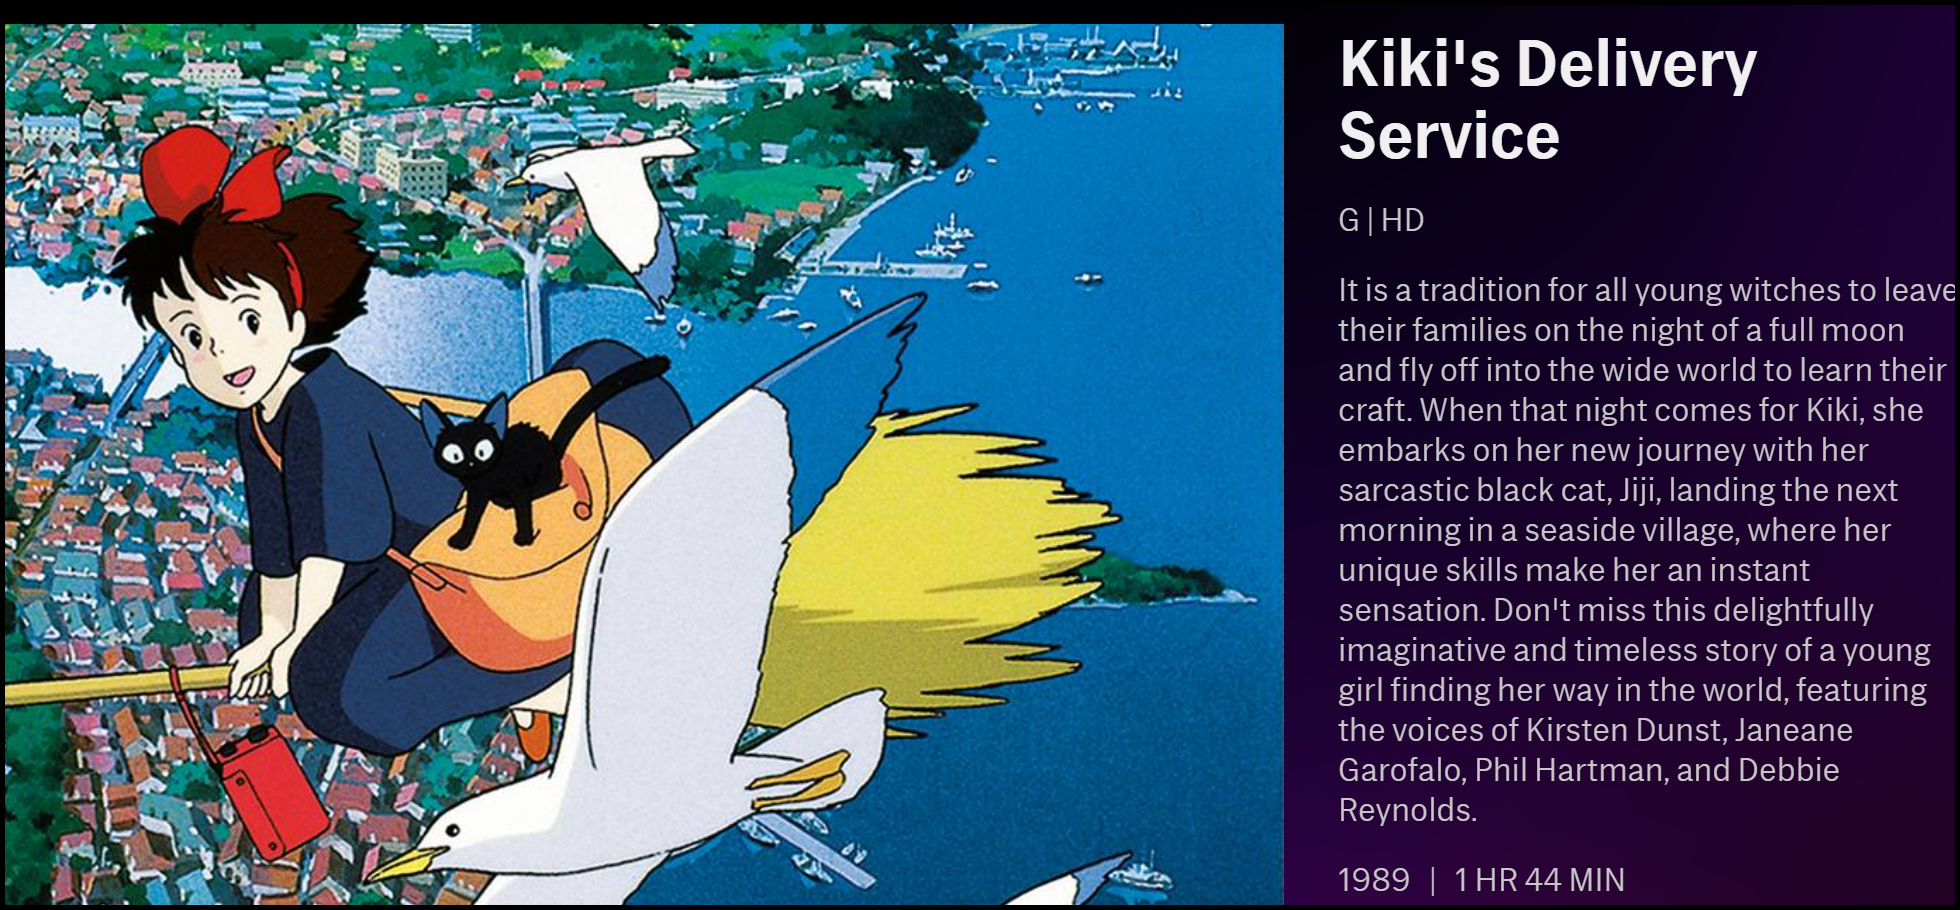 La descripción del "Servicio de entrega de Kiki" en HBO Max.